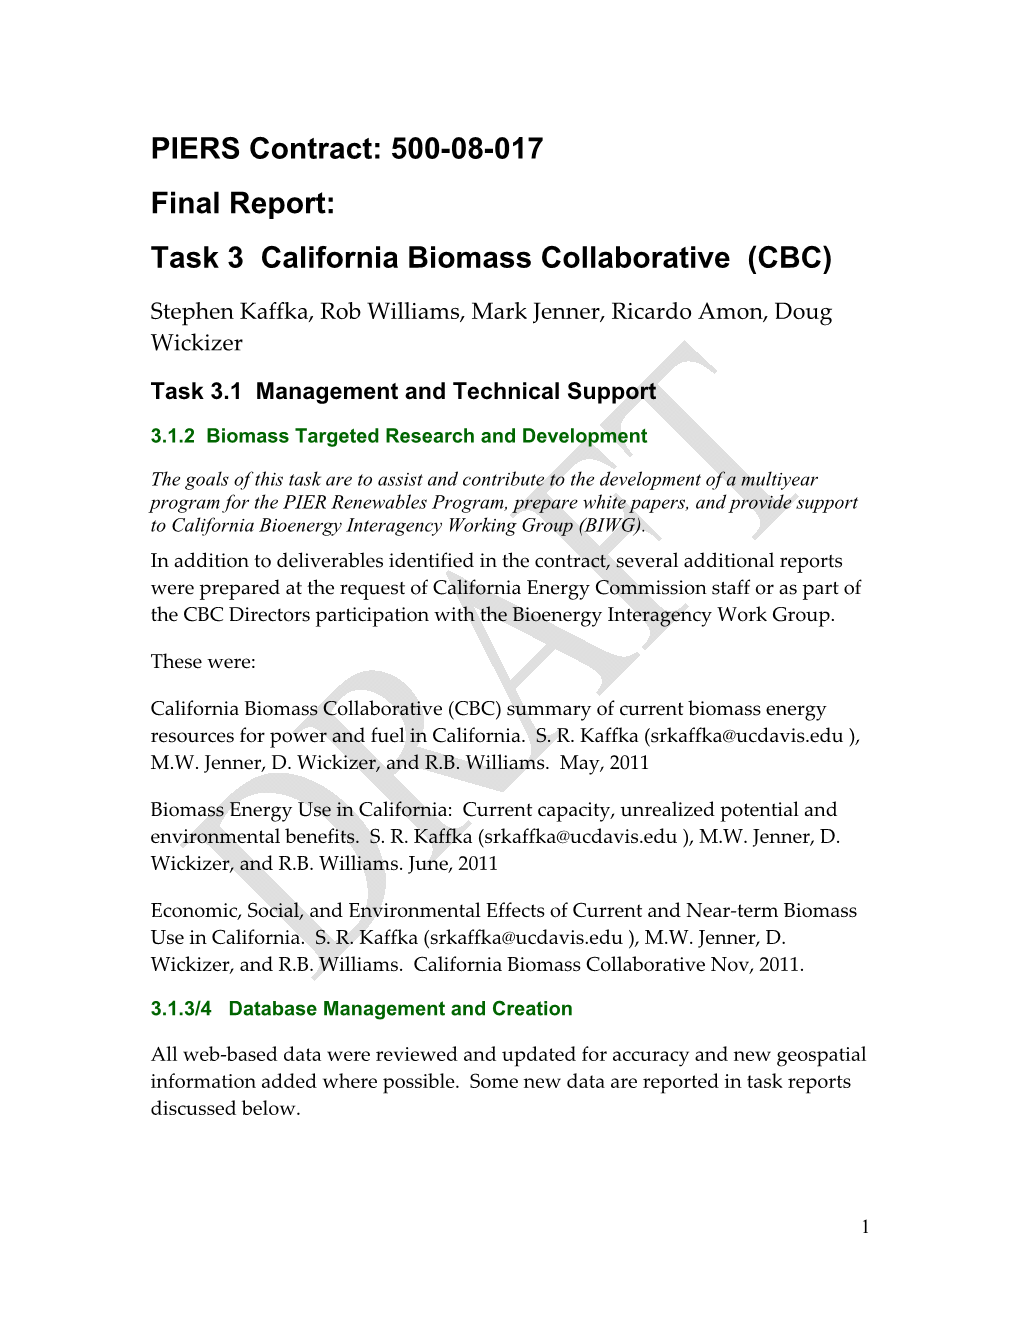 Task 3 California Biomass Collaborative (CBC)